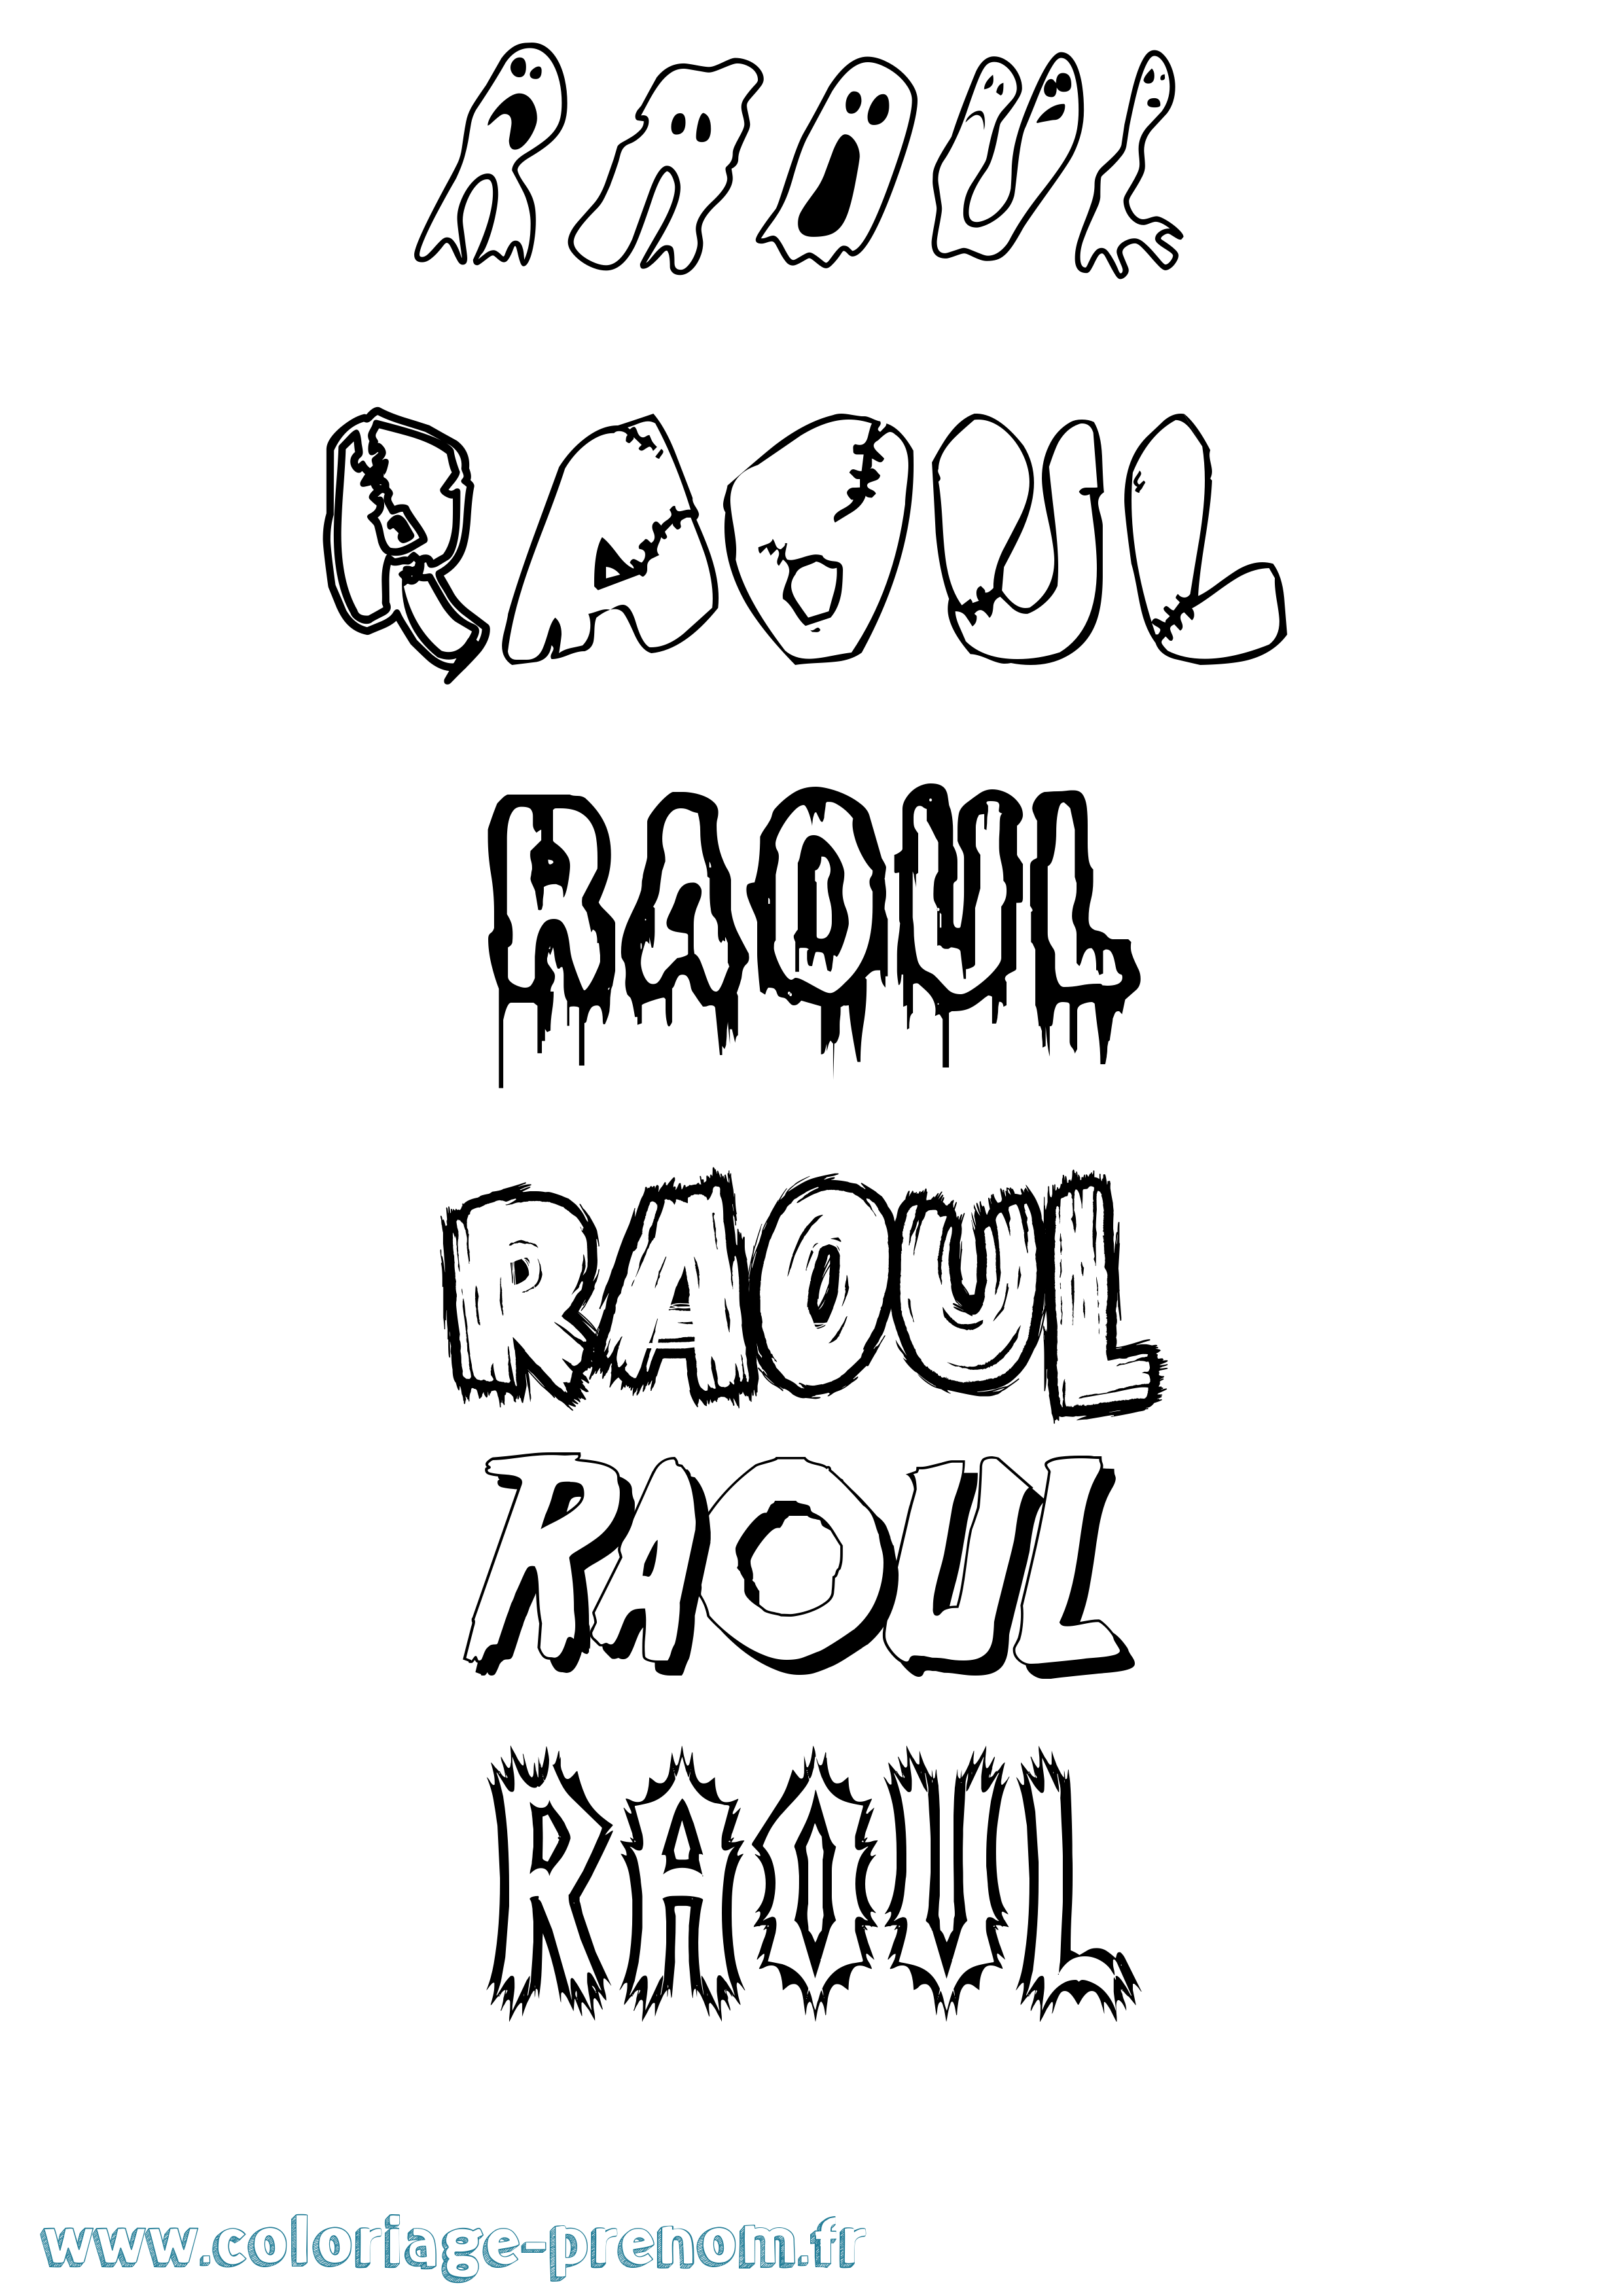 Coloriage prénom Raoul Frisson